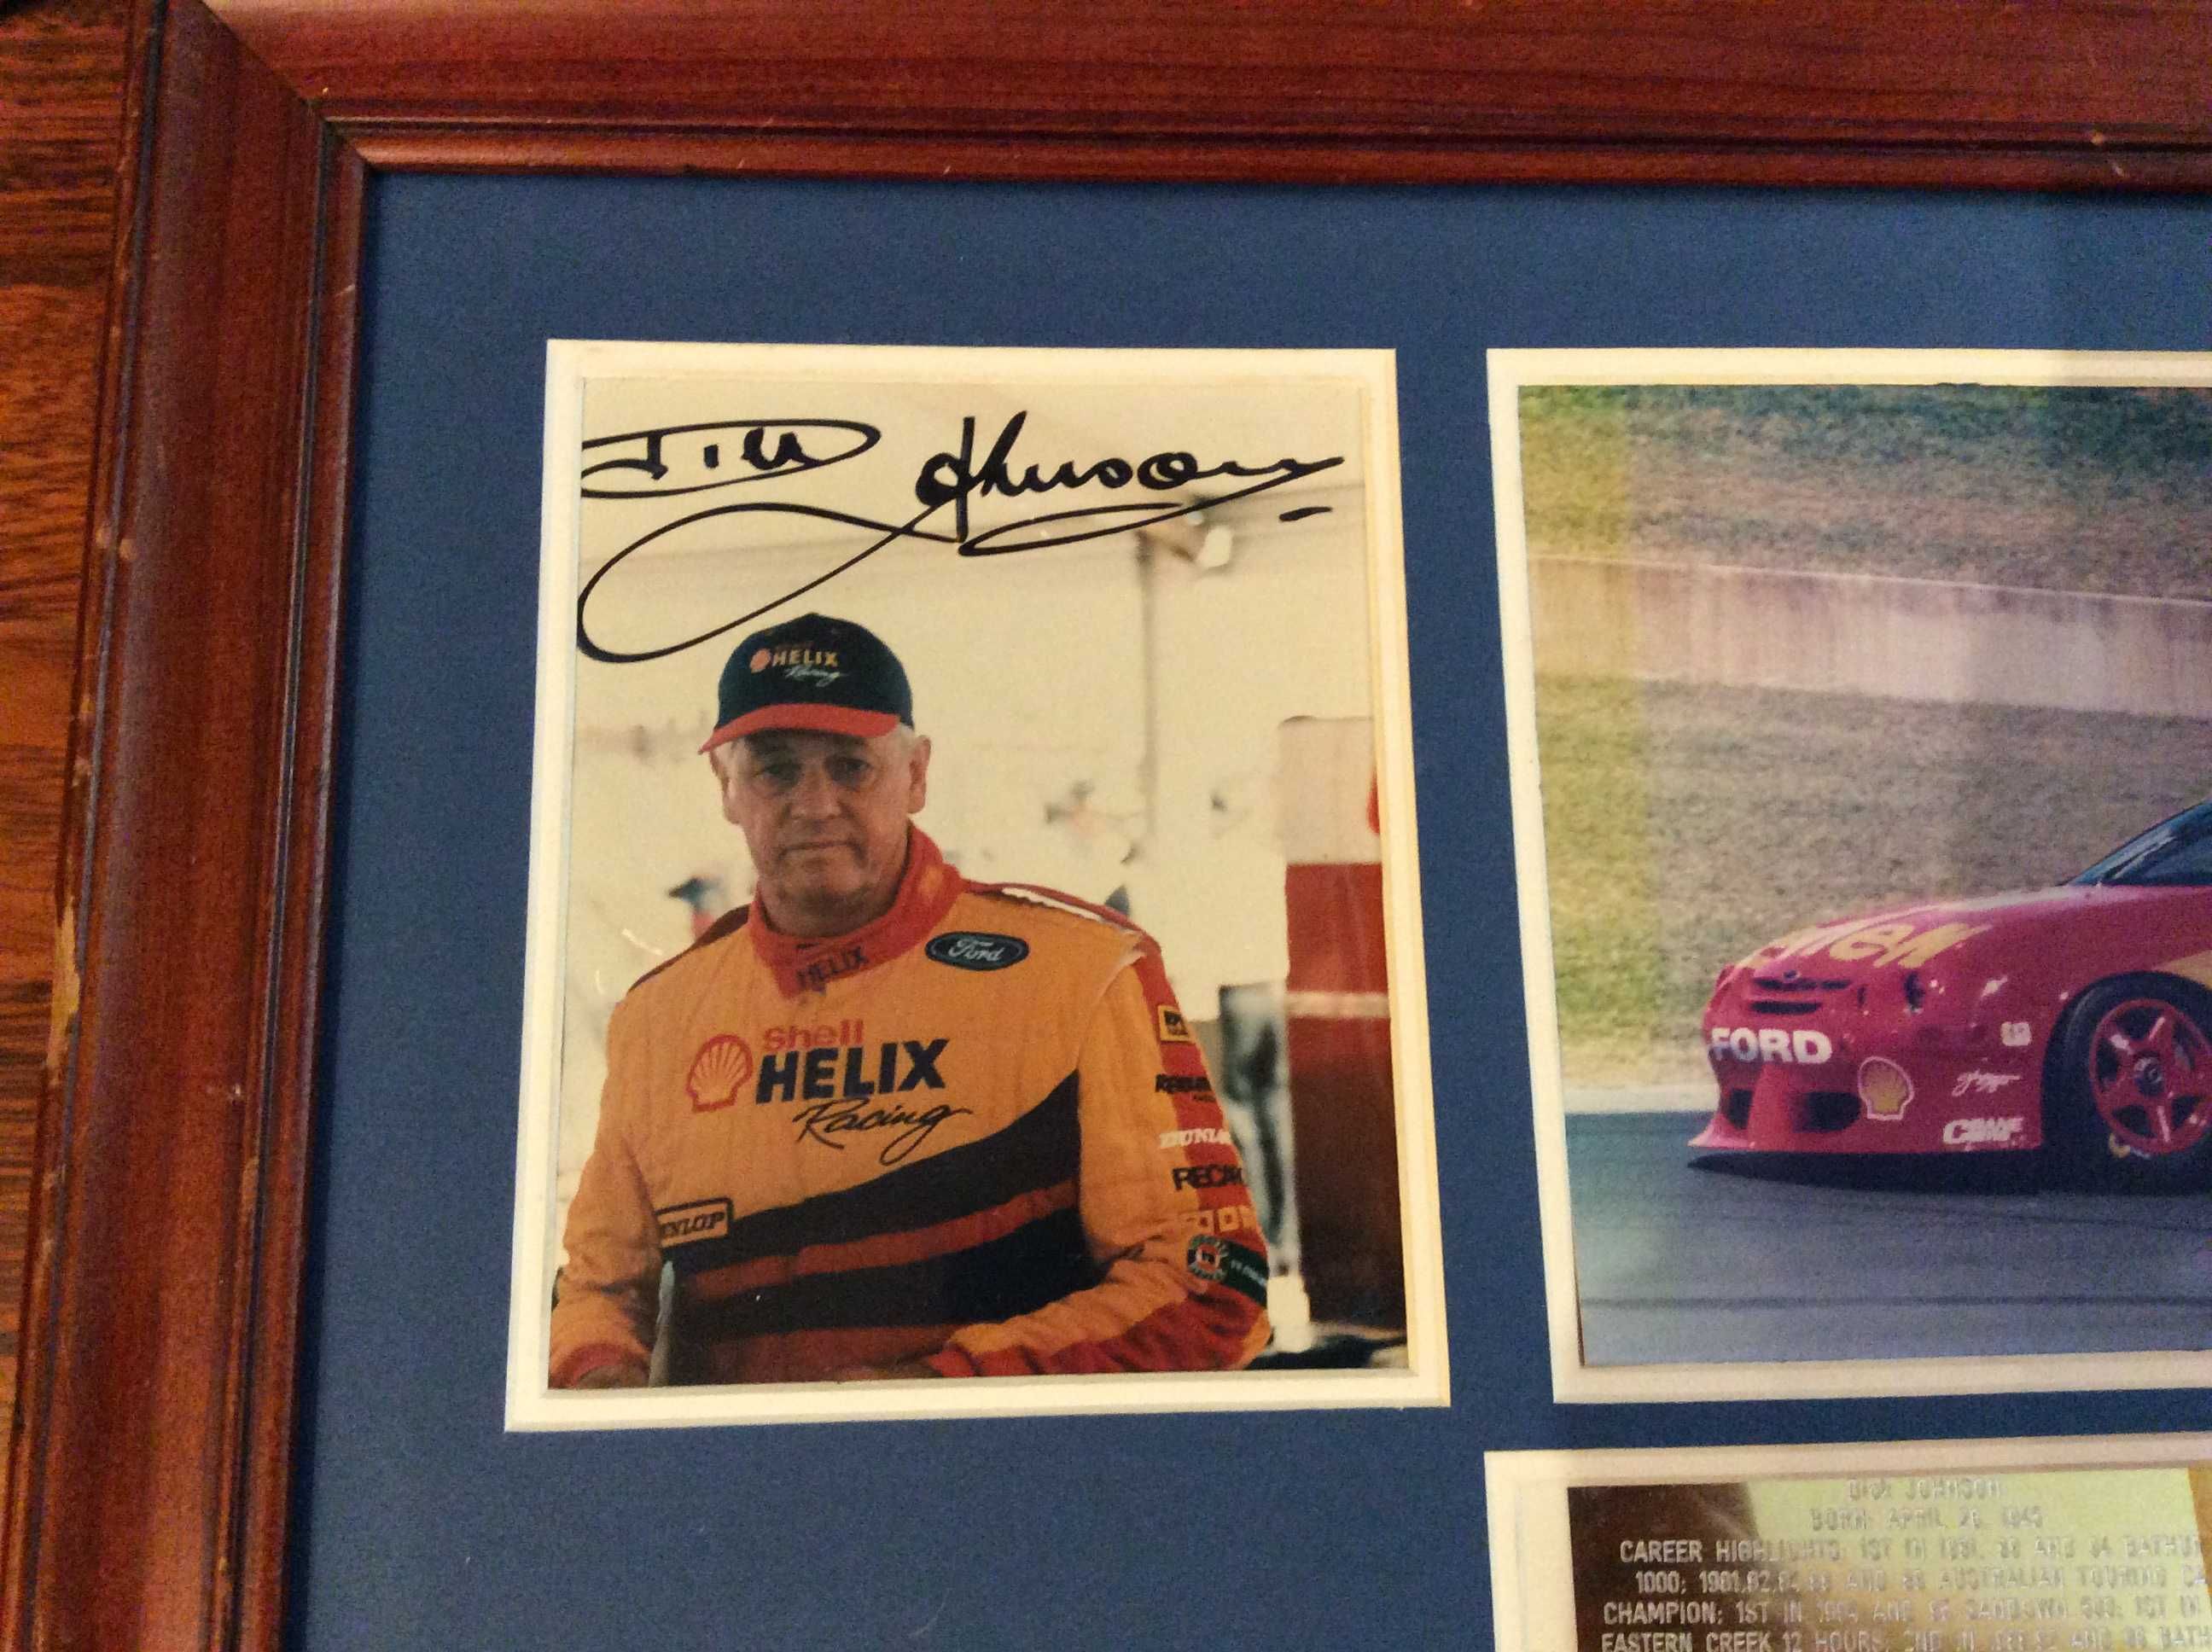 Sprzedam zdjęcie w ramie z autografem Dick Johnson kierowca rajdowy